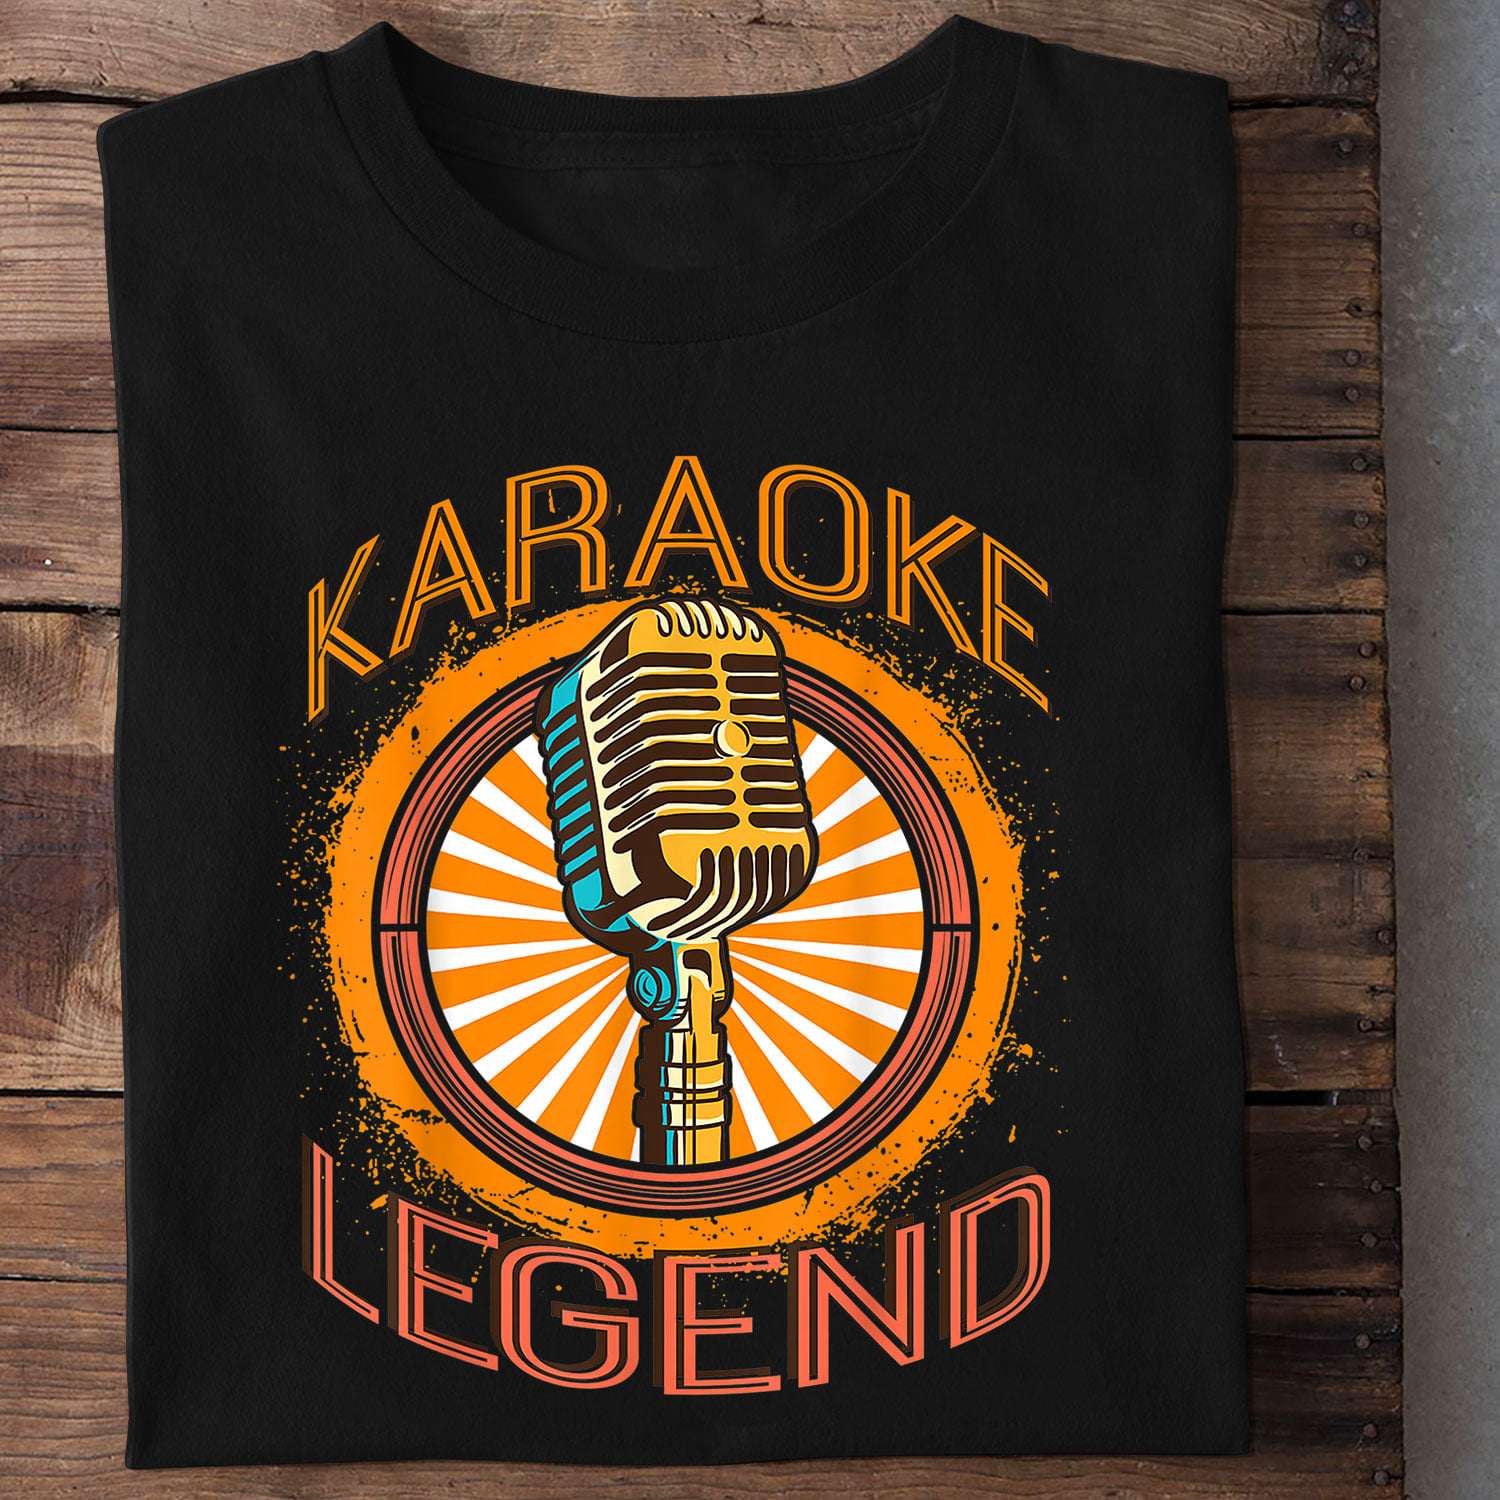 Karaoke legend - Love to sing karaoke, Karaoke the hobby